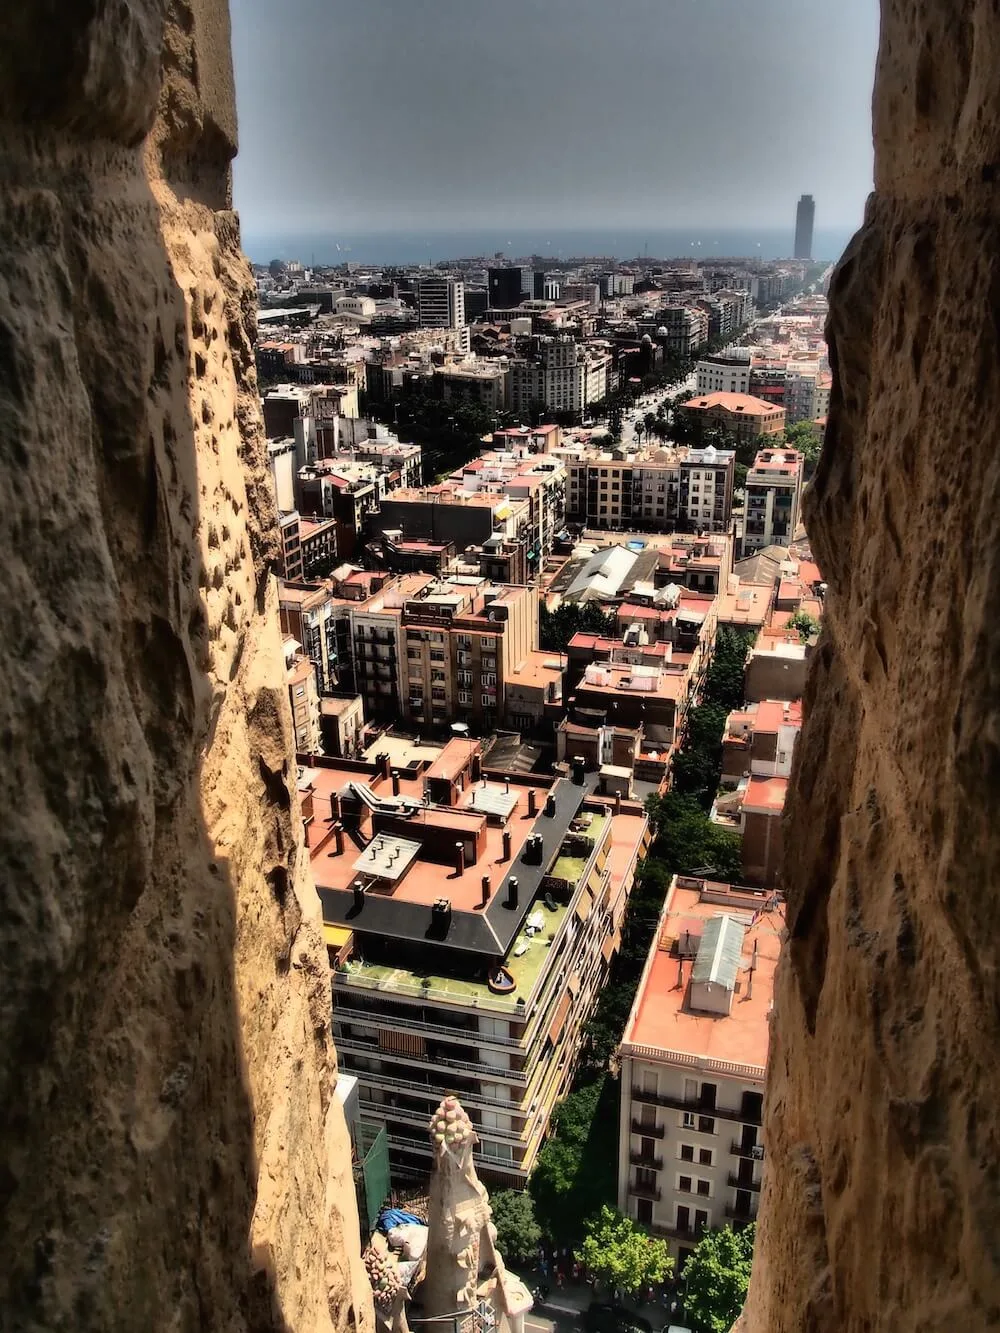 The towers of the Sagrada Familia